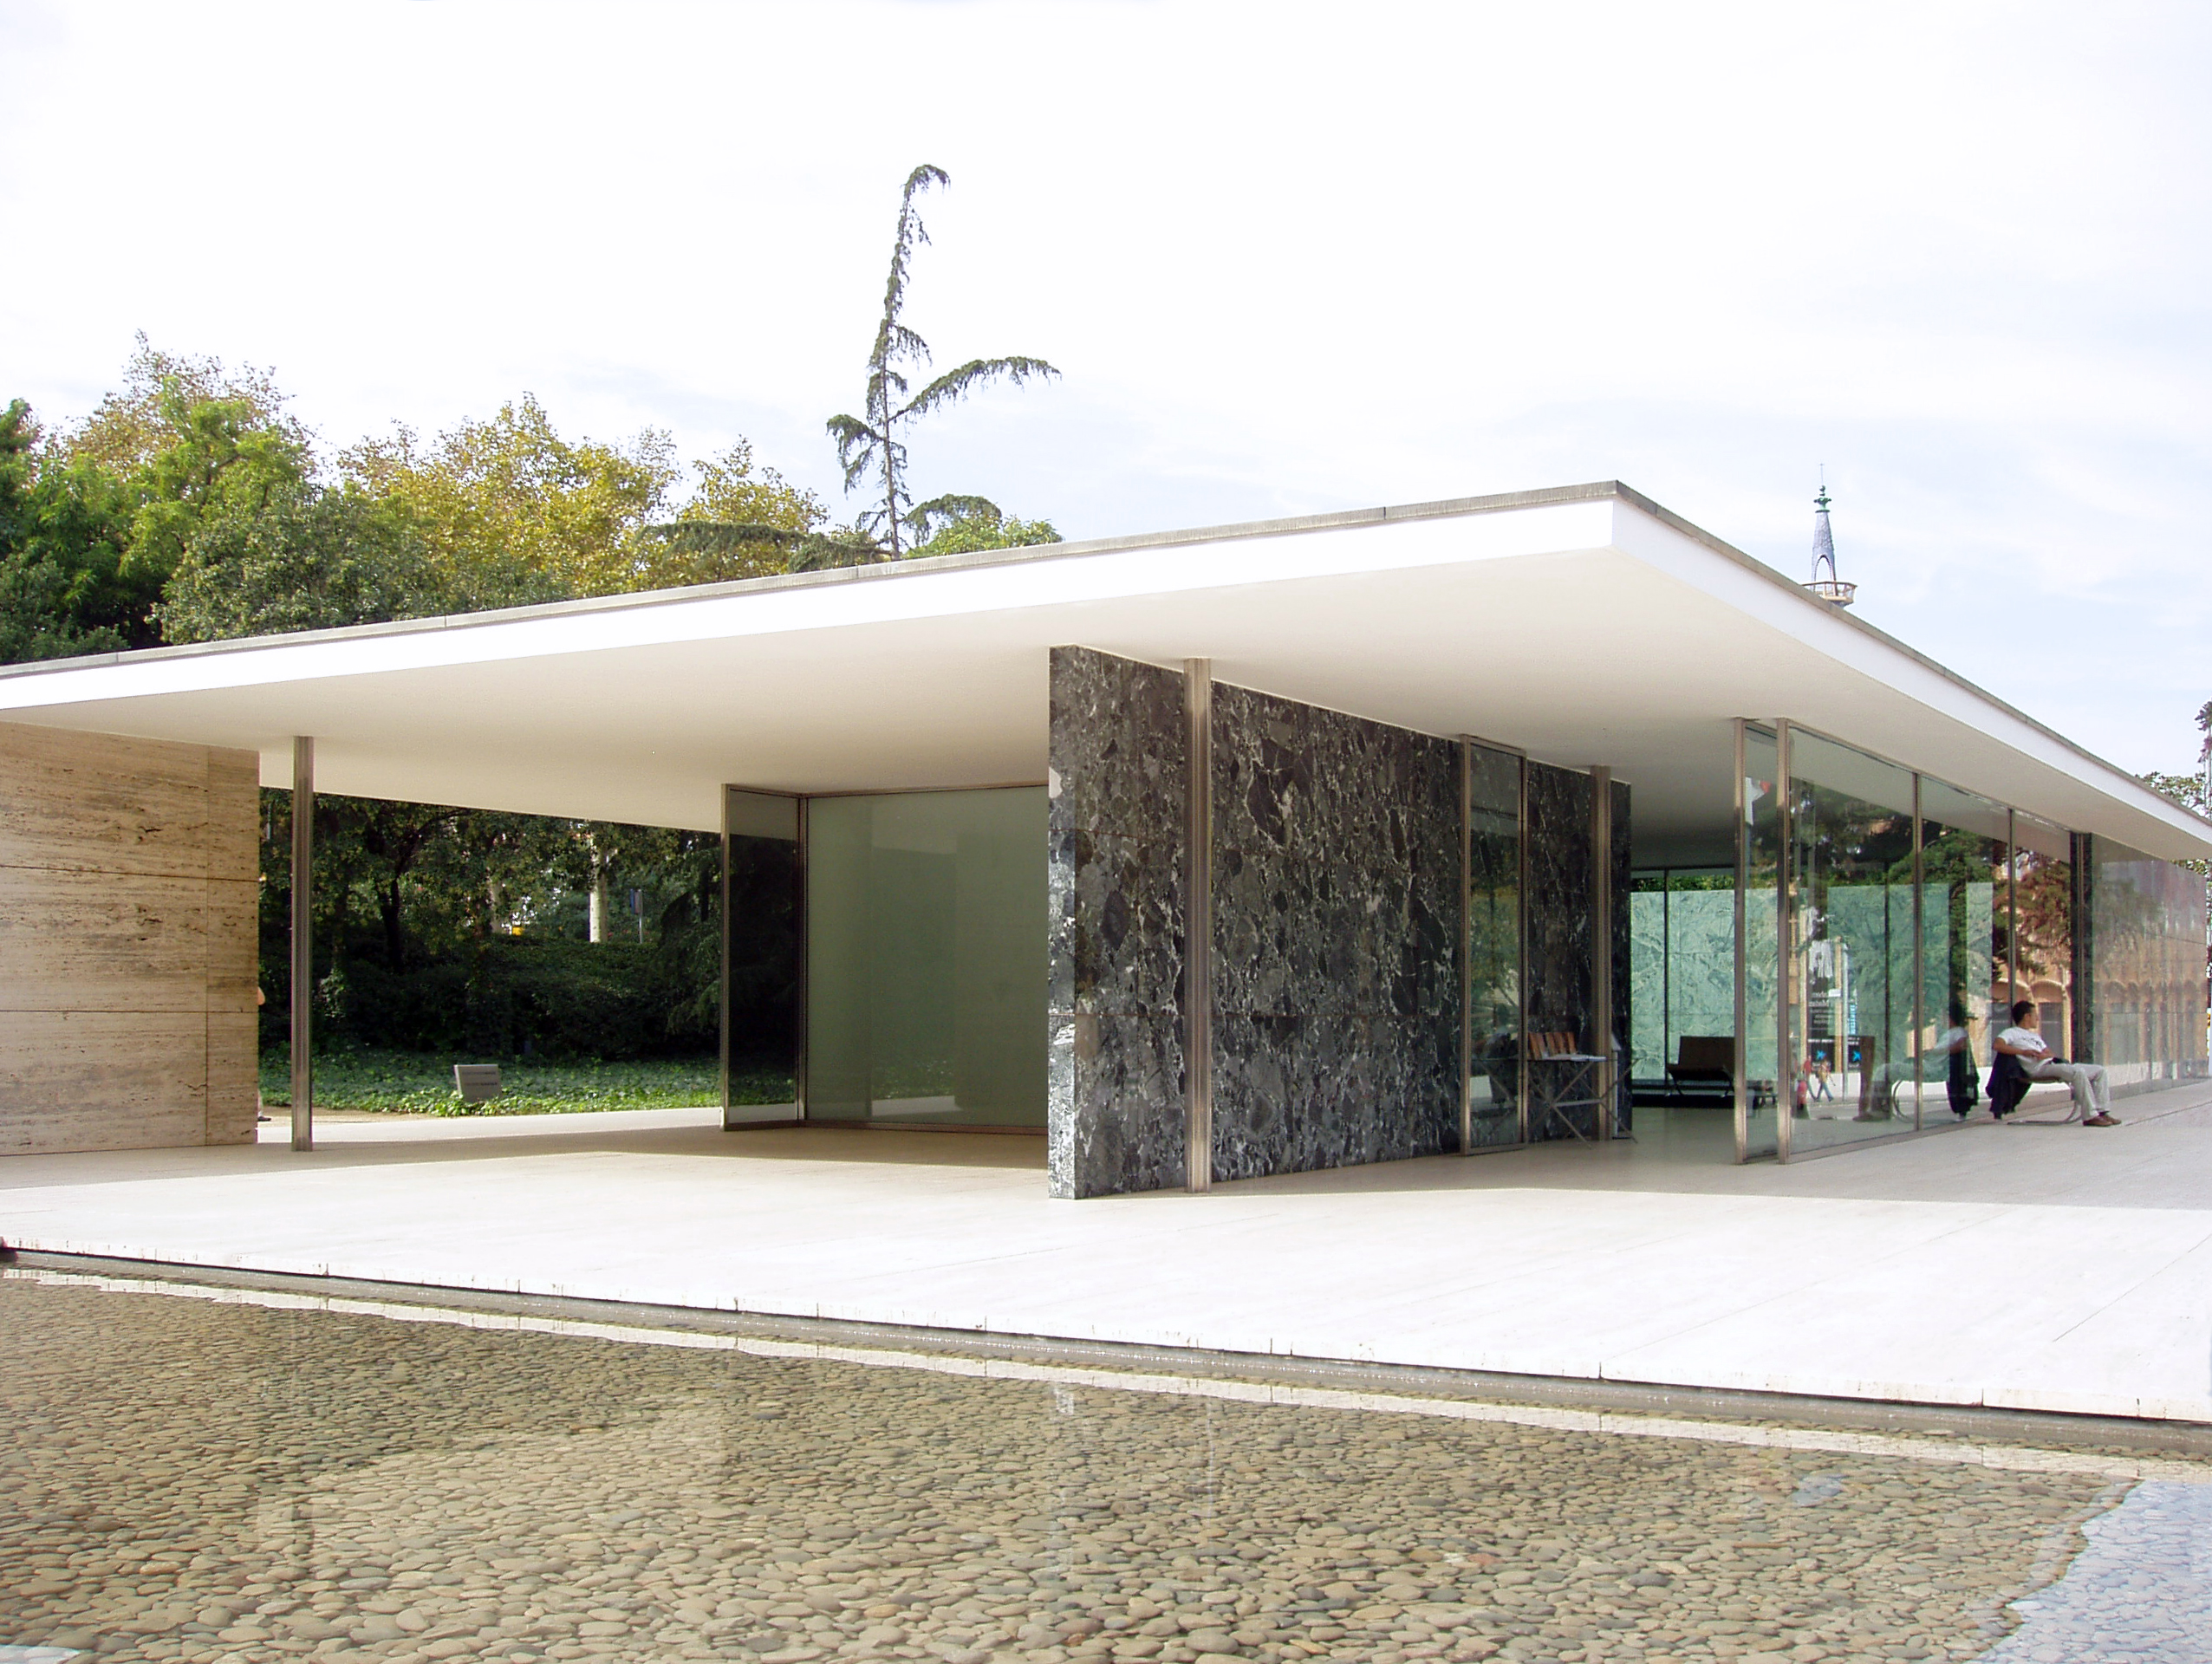 Pabellón de Alemania en la Exposición Universal de Barcelona 1929 (reconstruido). Arquitecto Ludwig Mies van der Rohe. From Wikimedia Commons, the free media repository